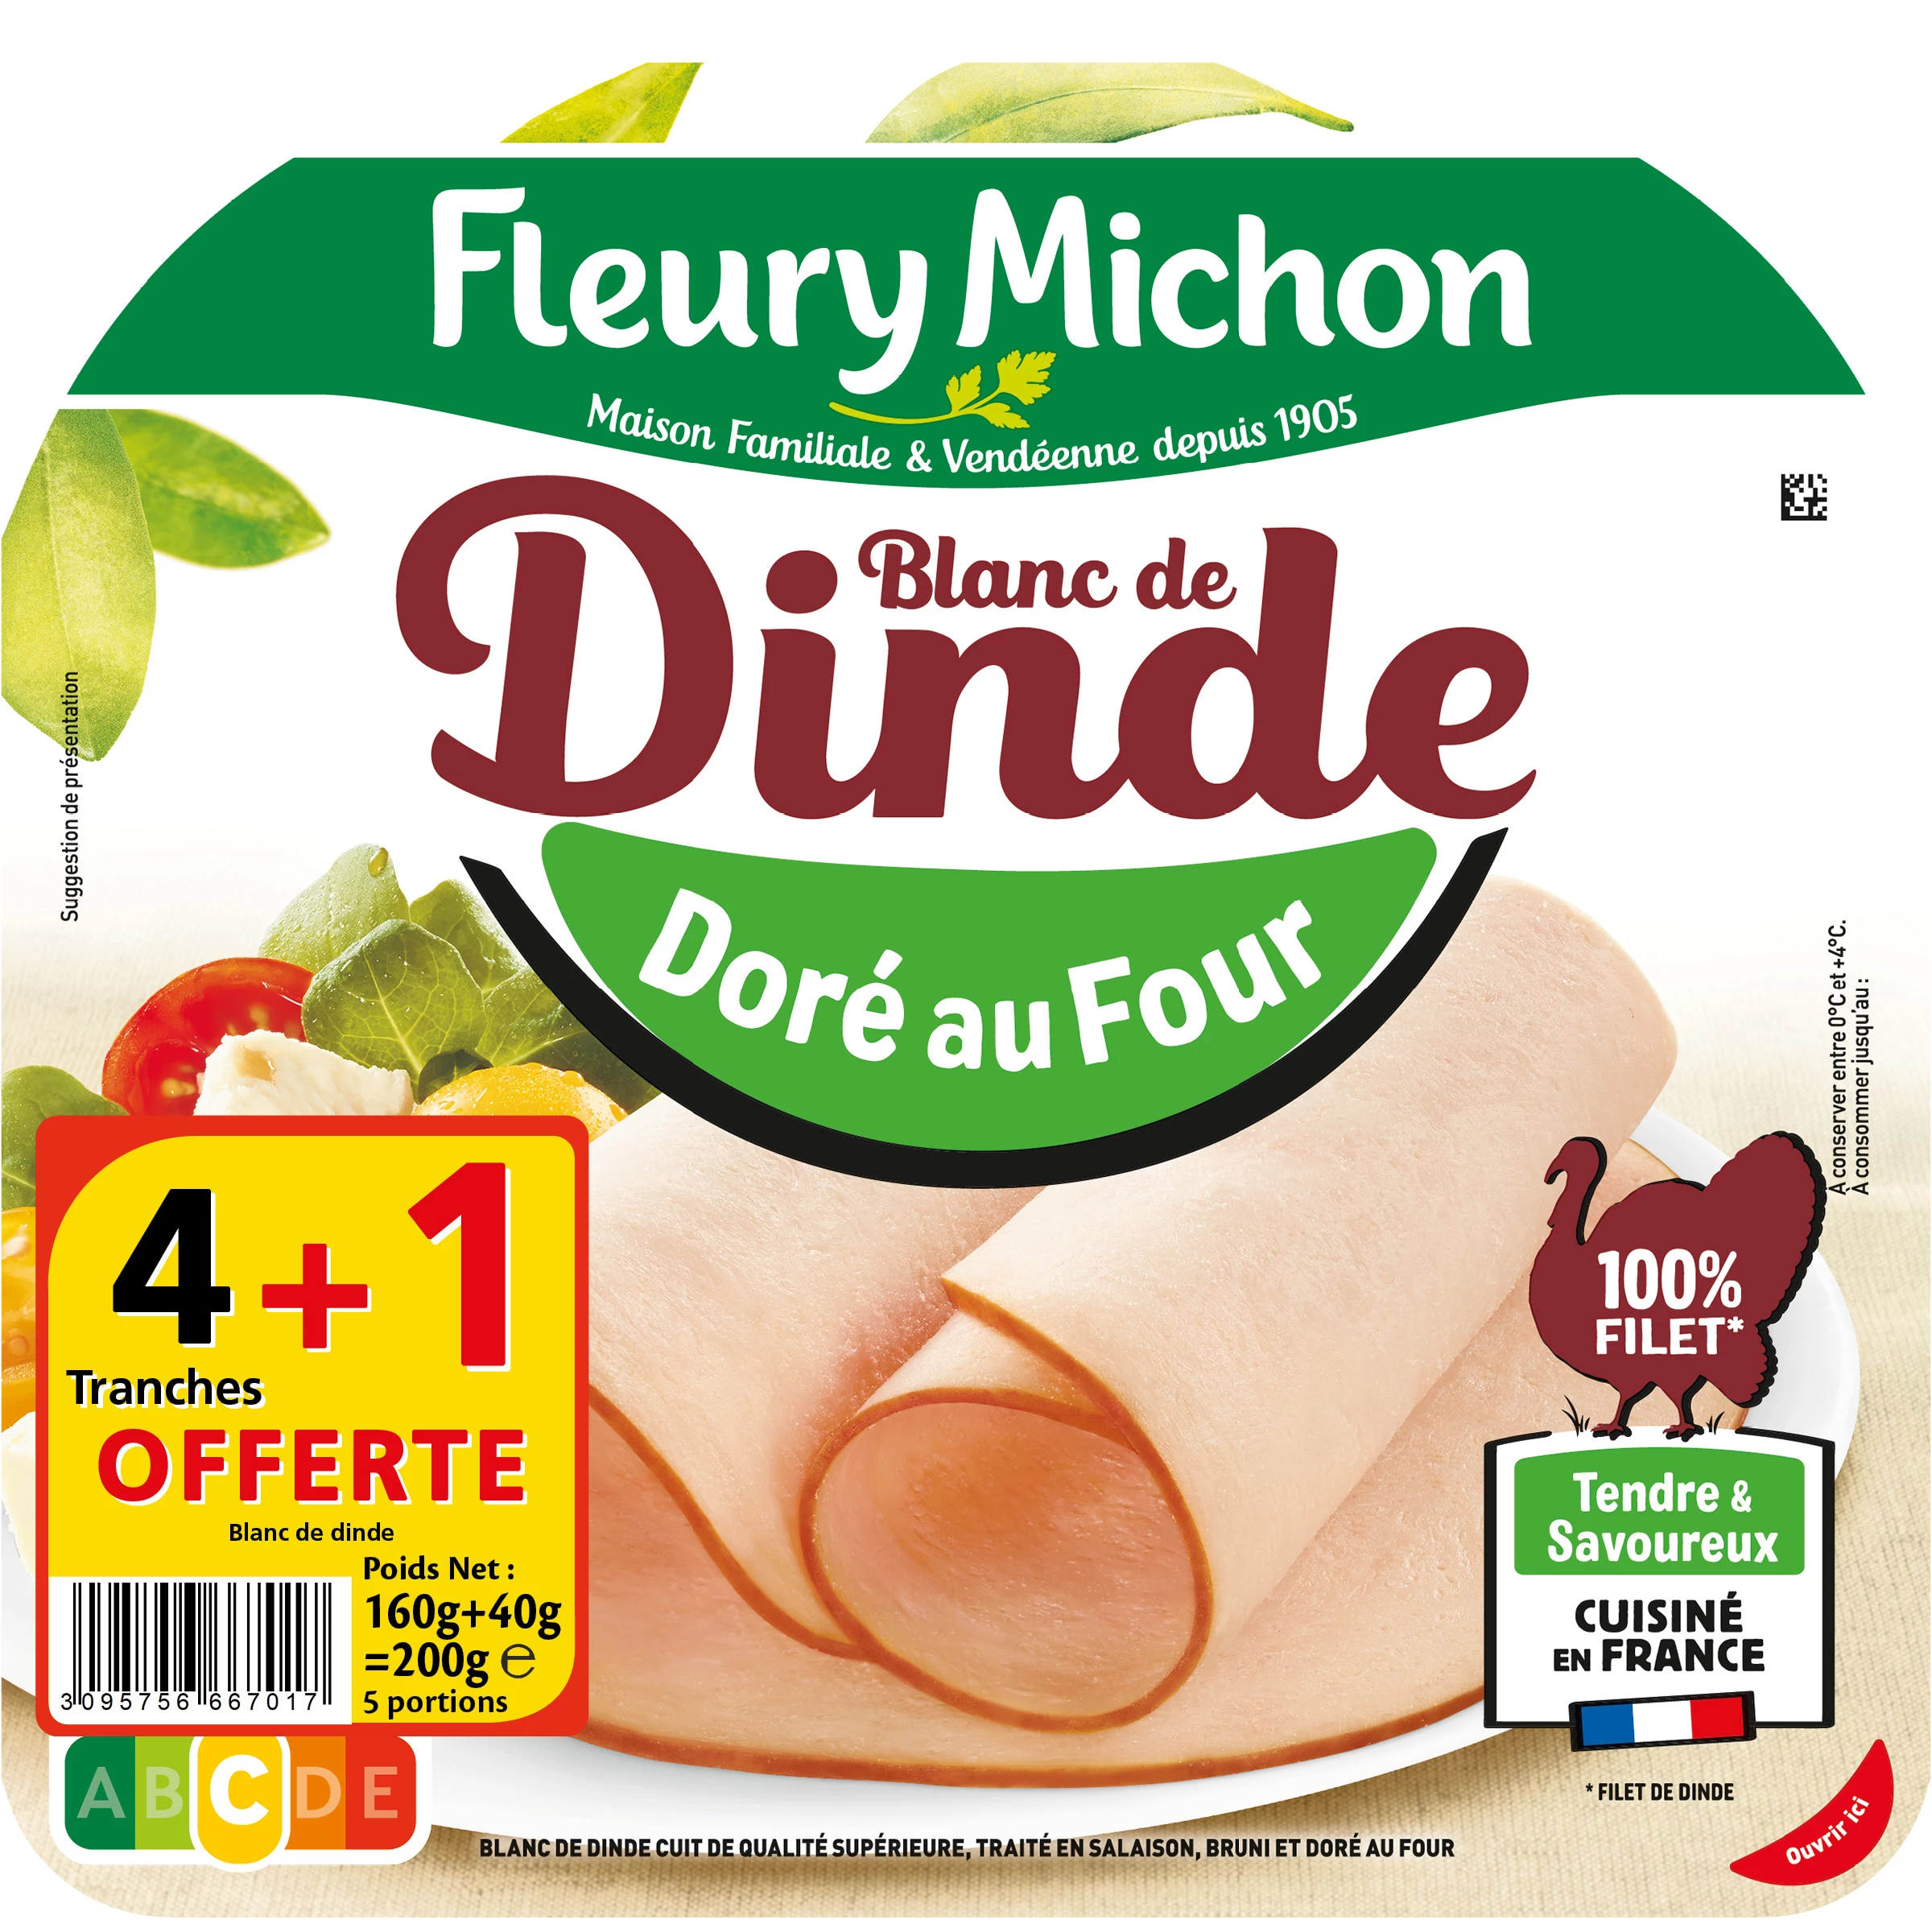 Blanc de Dinde Doré au Four, 4 Tranches + 1 Offerte - FLEURY MICHON